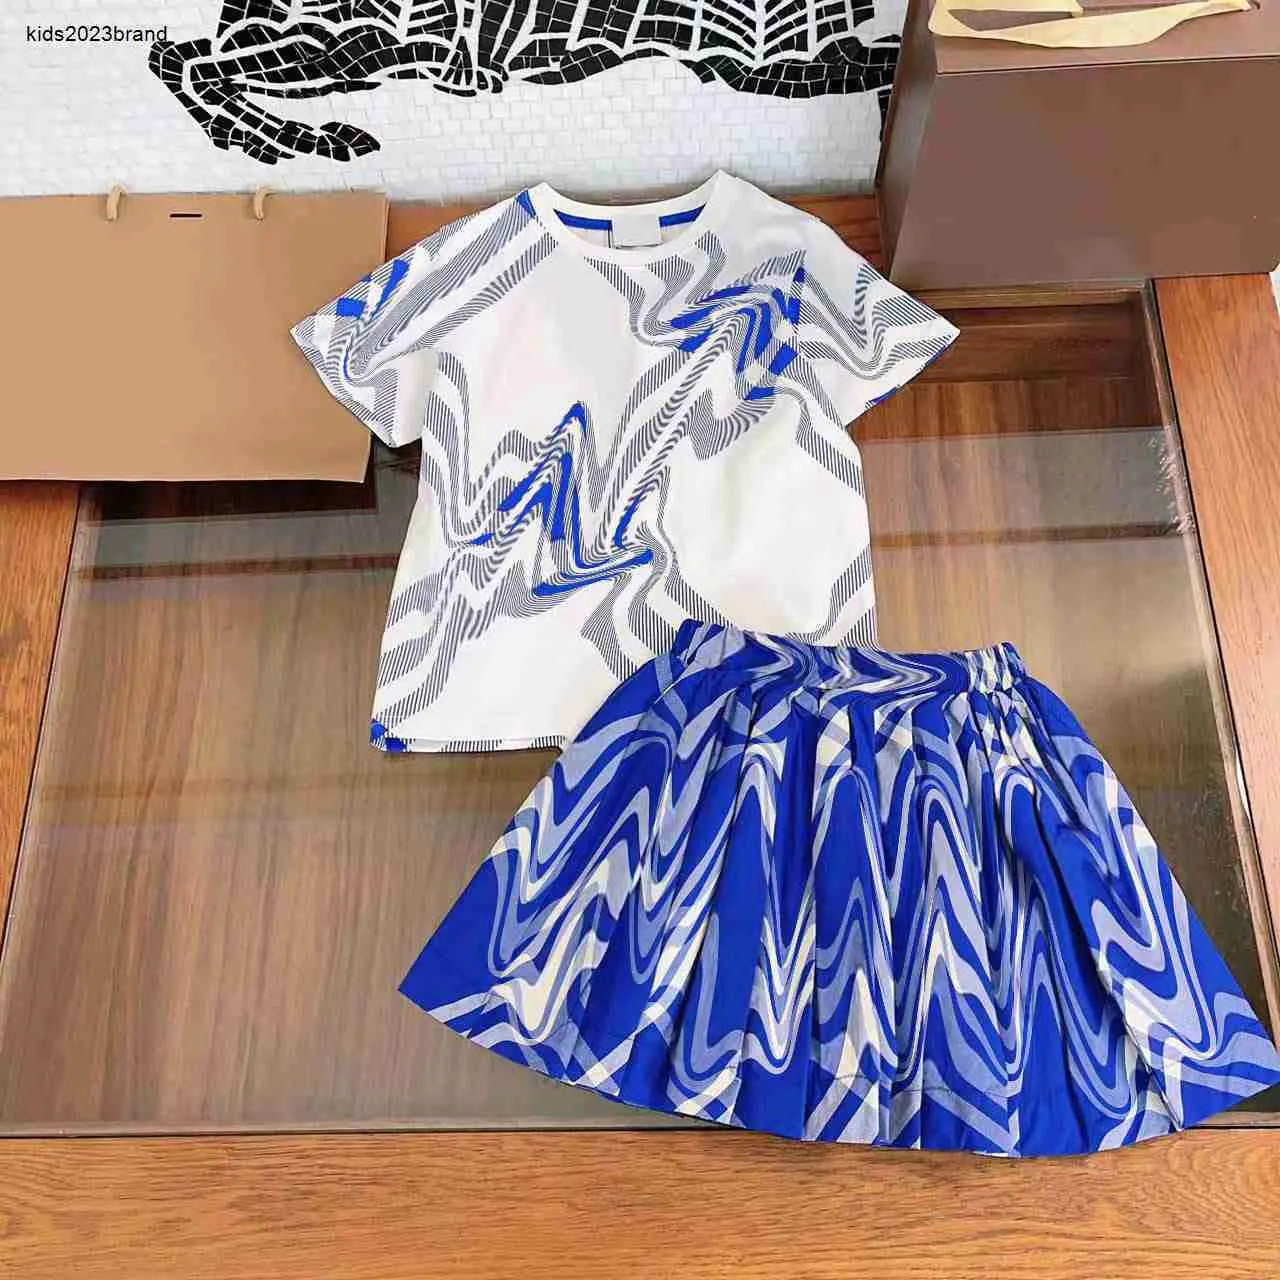 Новые комплекты детских платьев, детские спортивные костюмы, одежда для маленьких девочек. Размер 100–160 см. Рубашка с короткими рукавами и короткая юбка цвета хаки с синим полосатым принтом. 24 февраля 2020 г.